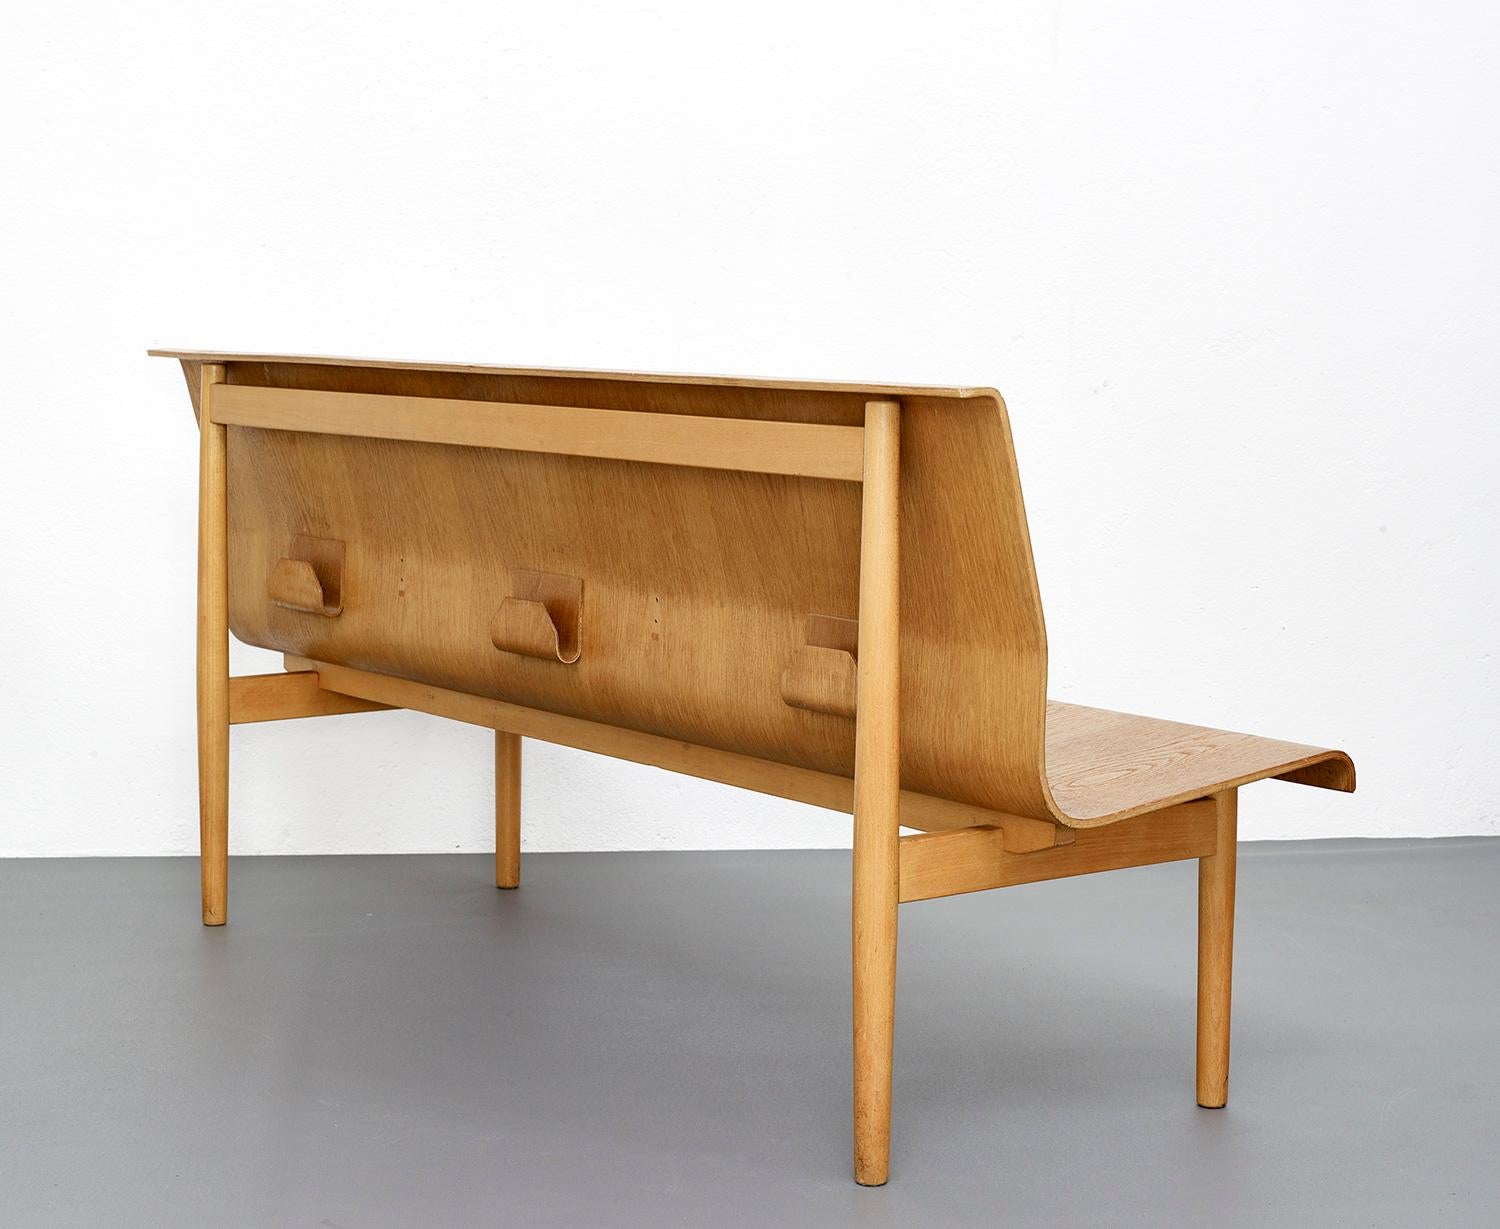 Scandinavian Modern Mid-Century Modern Scandinavian Plywood Bench in Style of Erik Gunnar Asplund